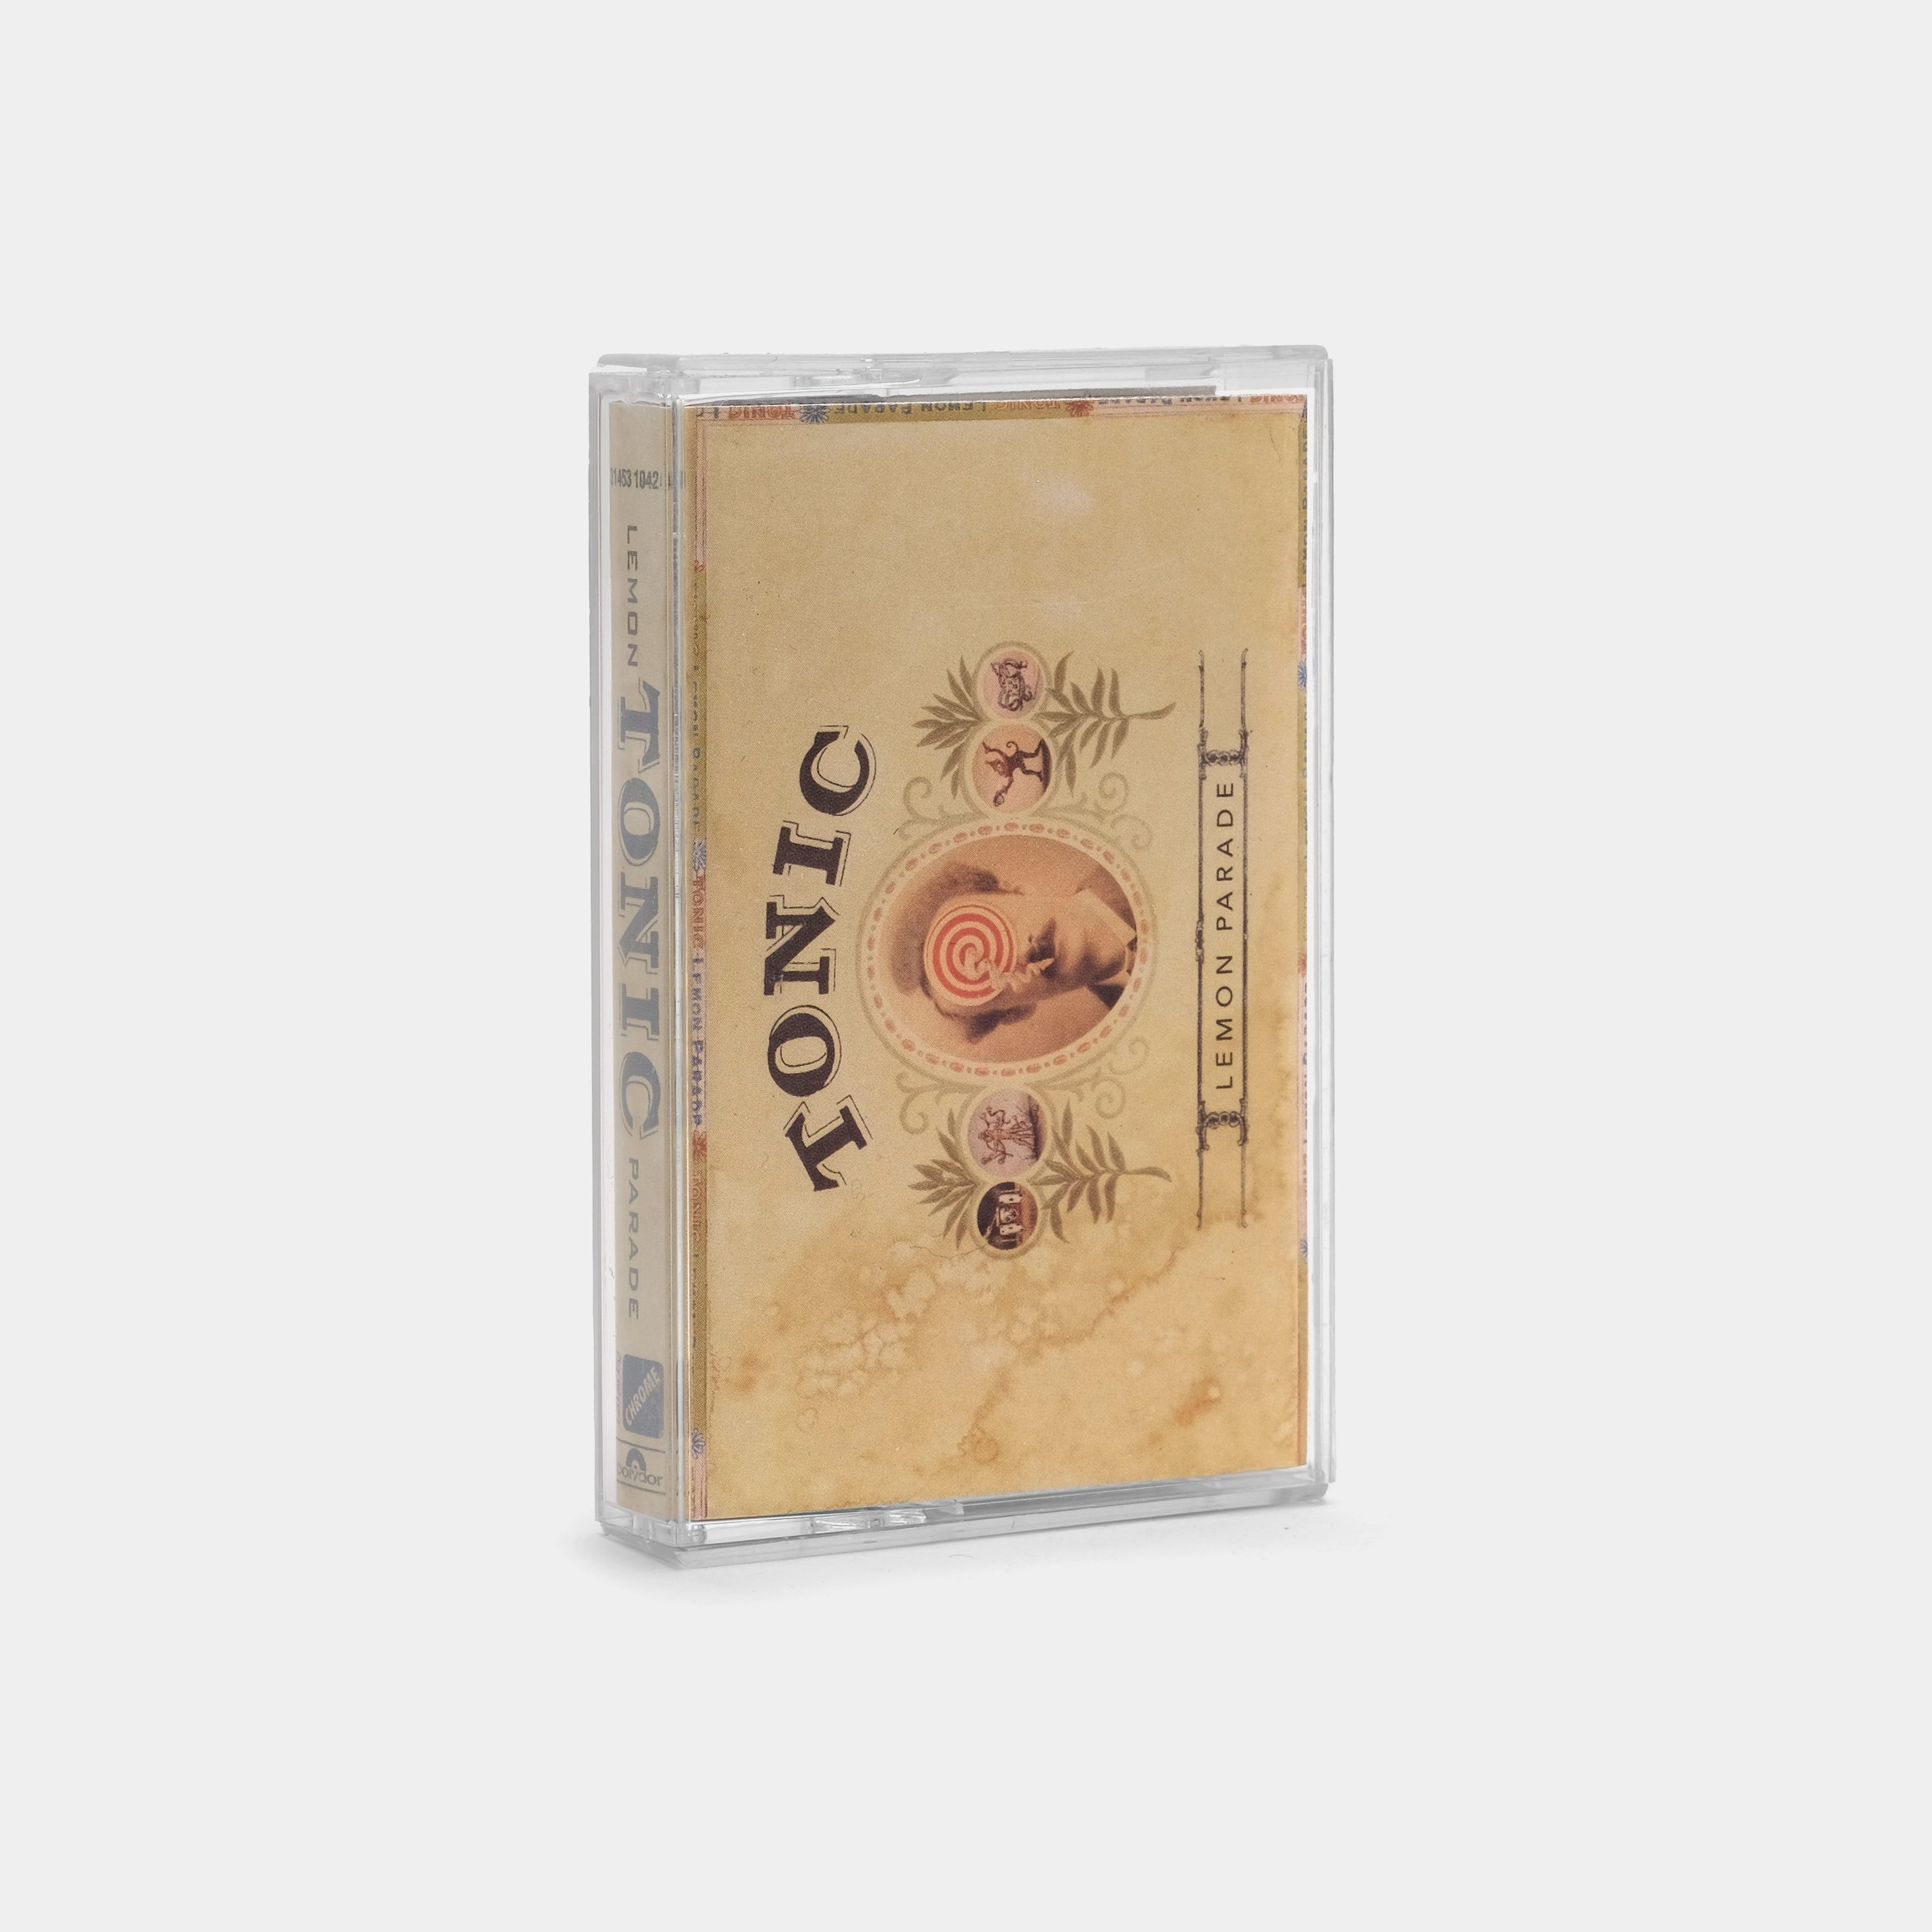 Tonic - Lemon Parade Cassette Tape